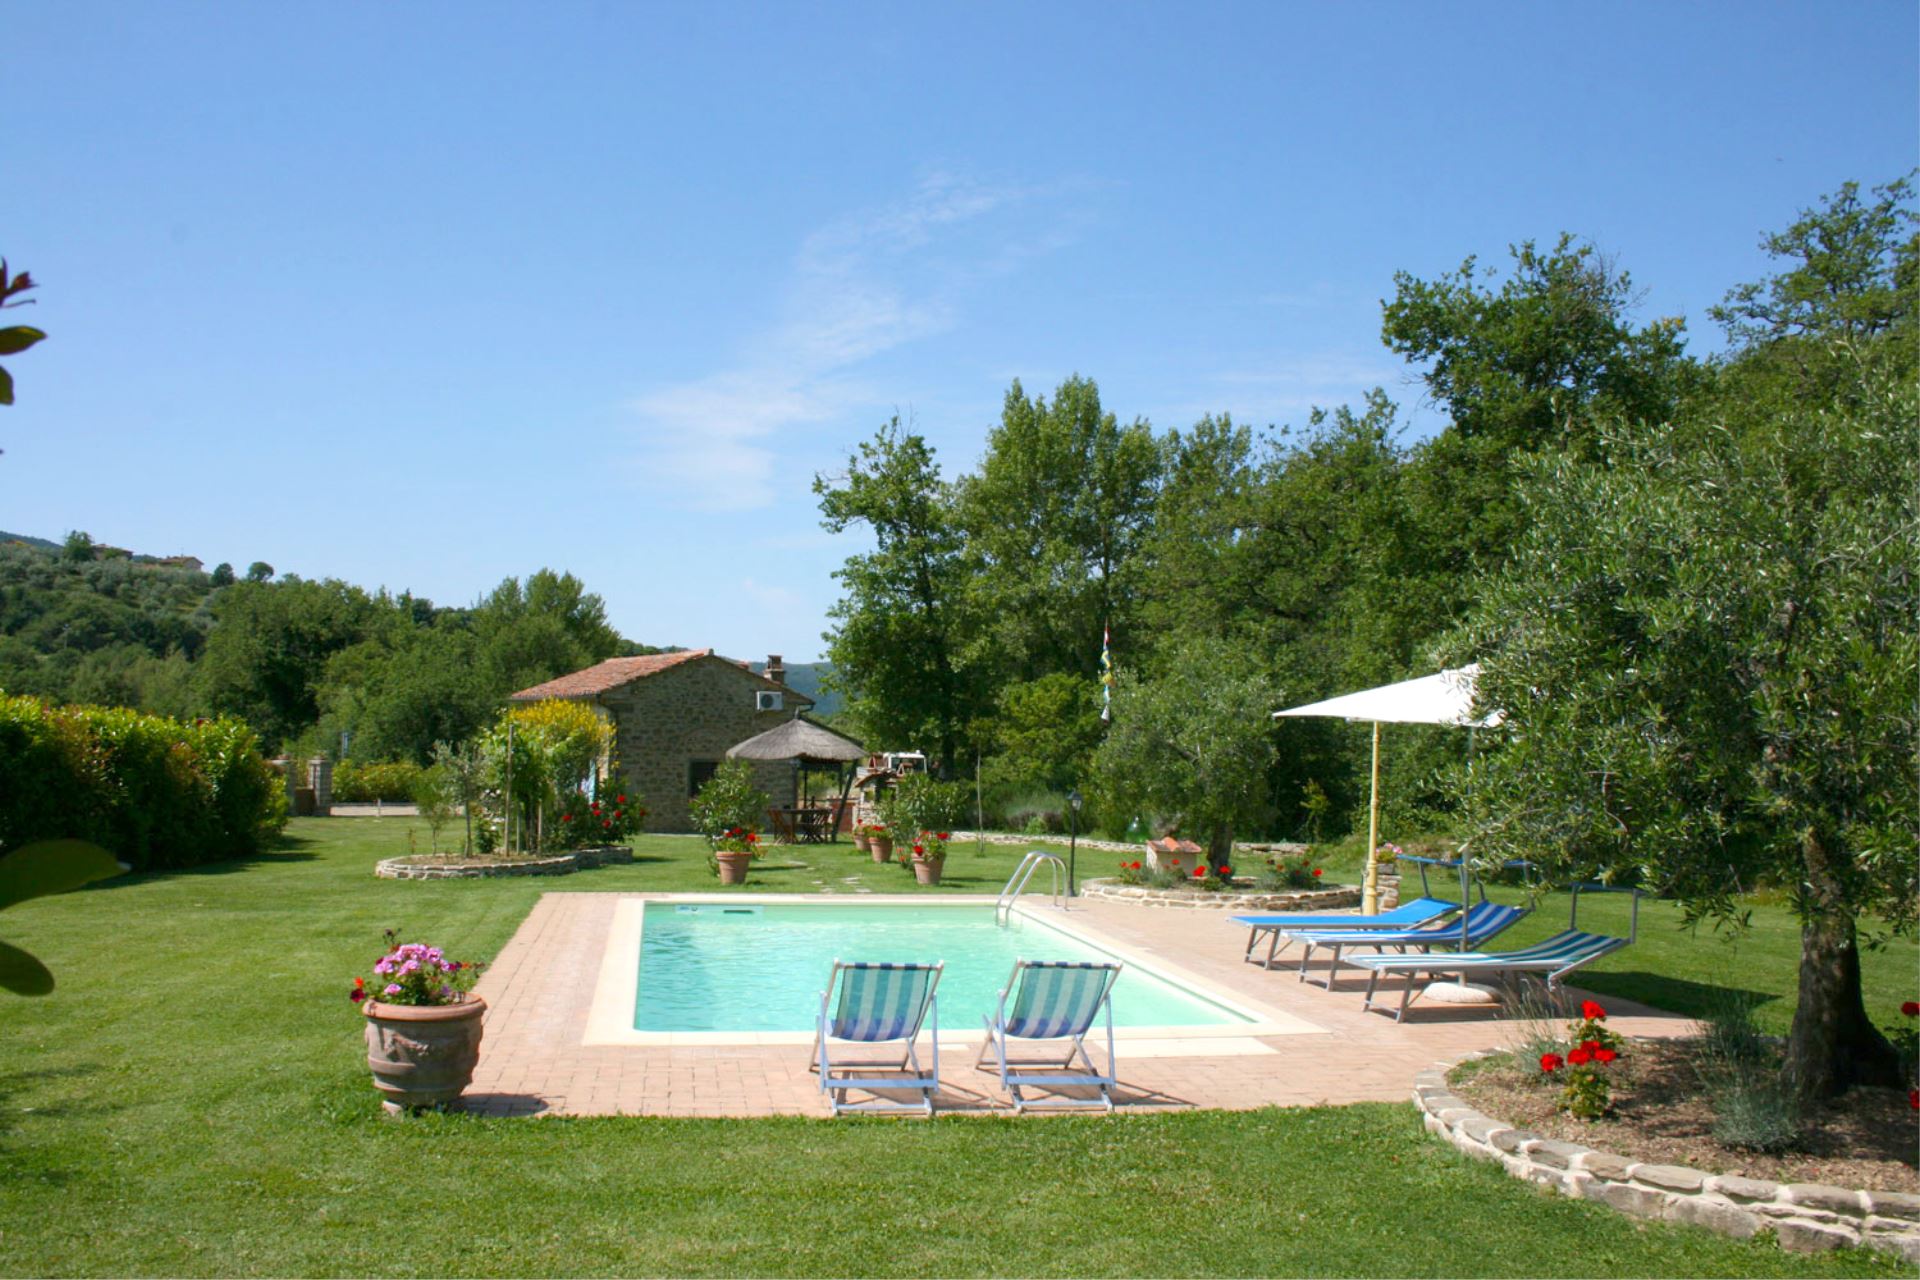 292_Casa Pino vakantiehuis met prive zwembad Toscane Arezzo30